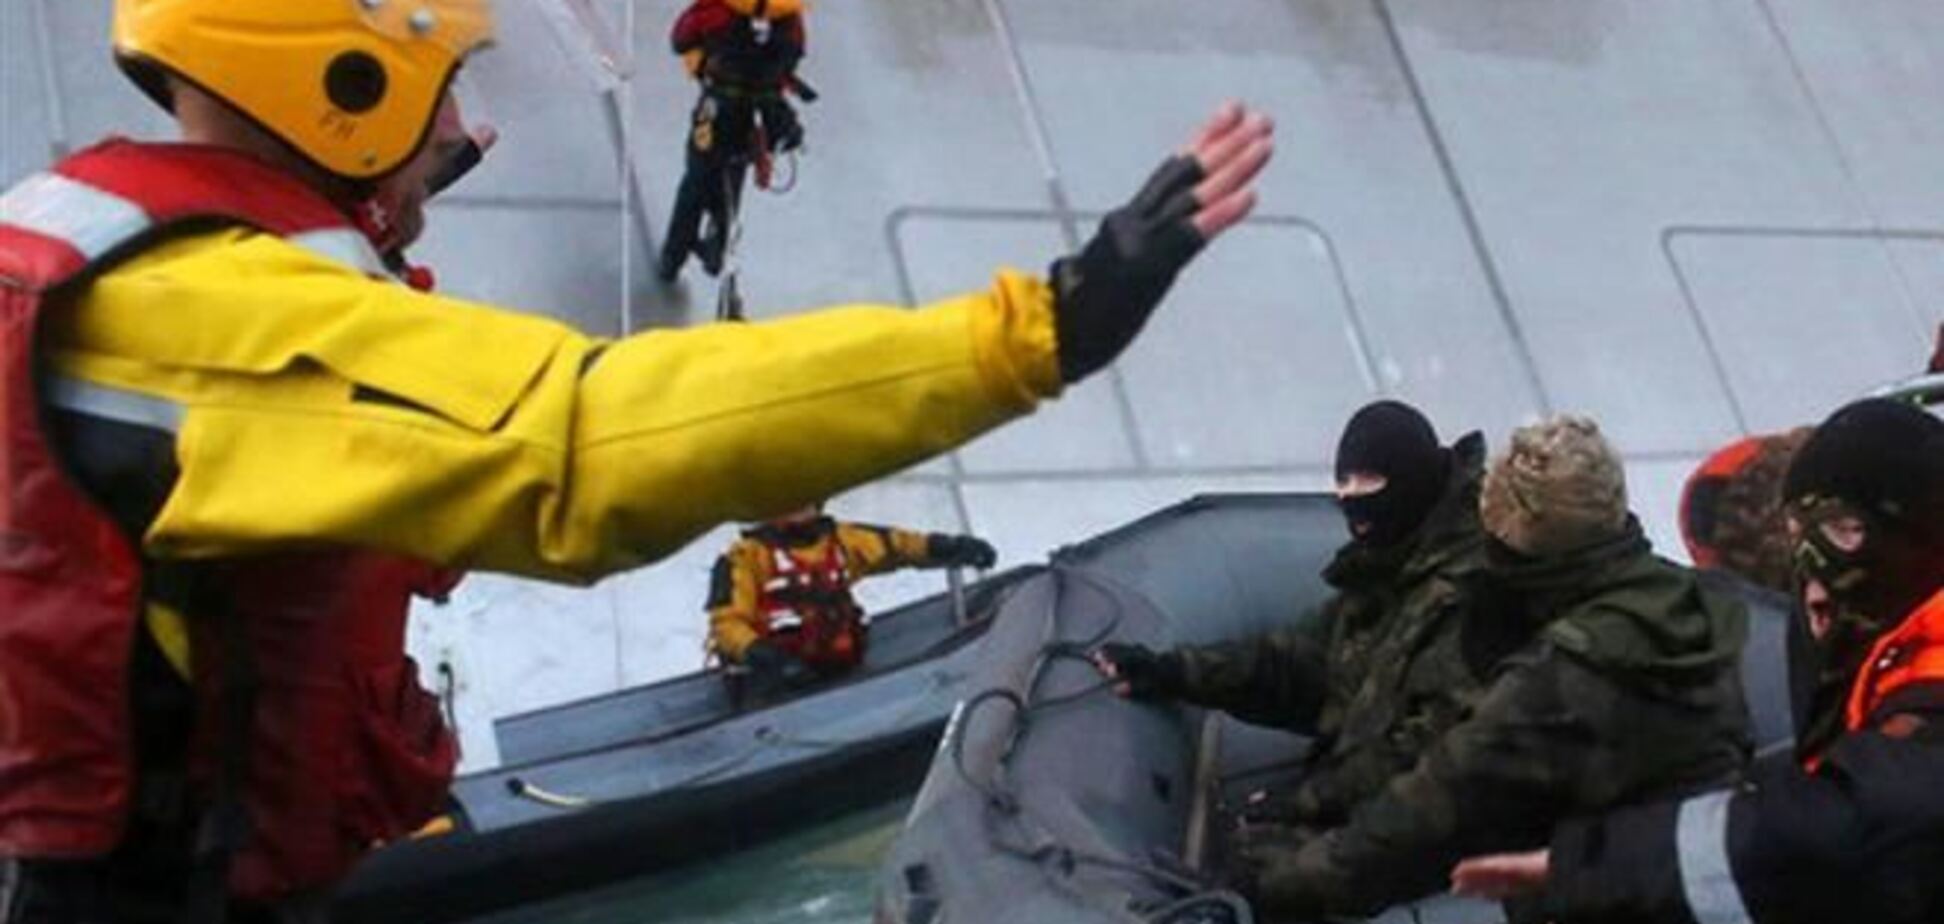 Нидерланды инициировали разбирательство против России из-за инцидента с судном Greenpeace